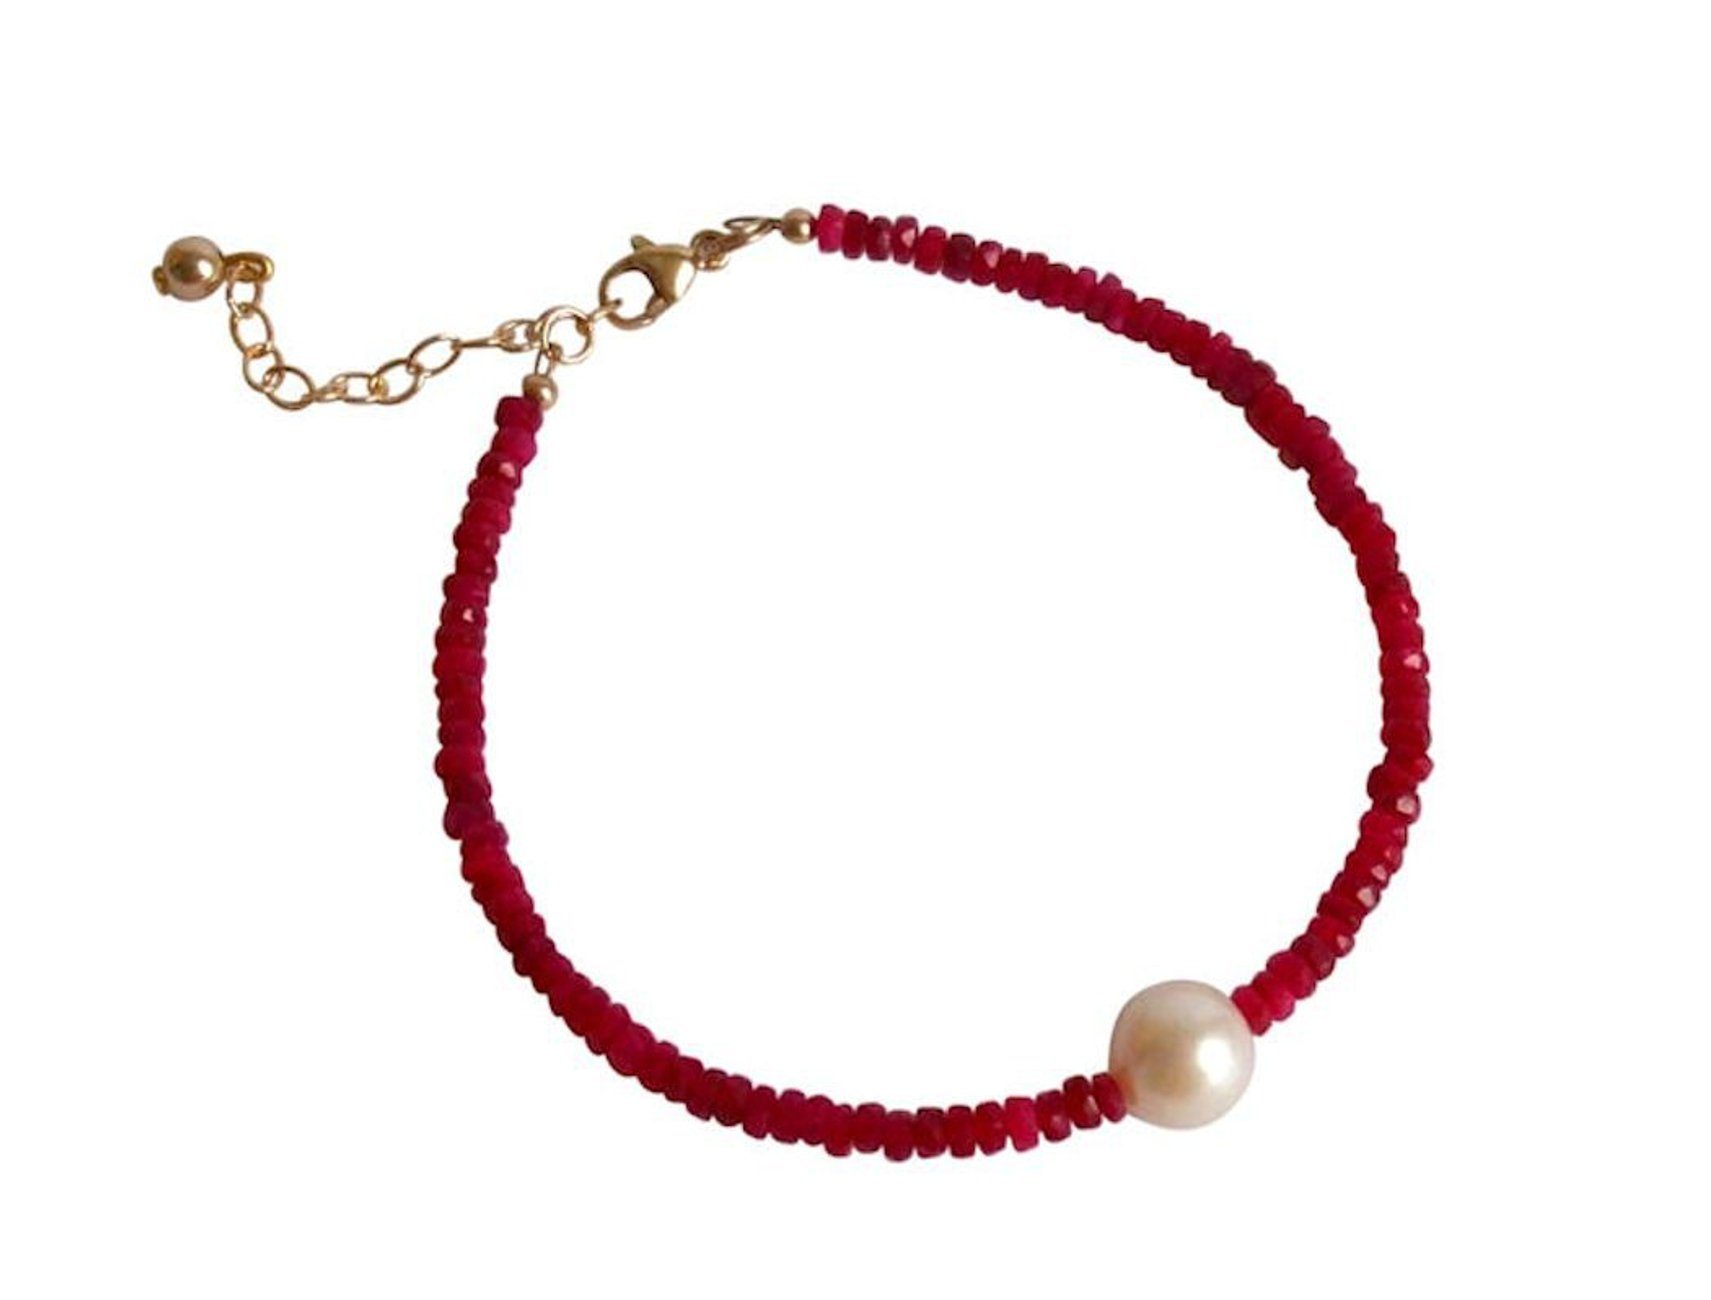 Damen Schmuck Gemshine Perlenarmband Rubinen und weiße Zuchtperle, Made in Germany